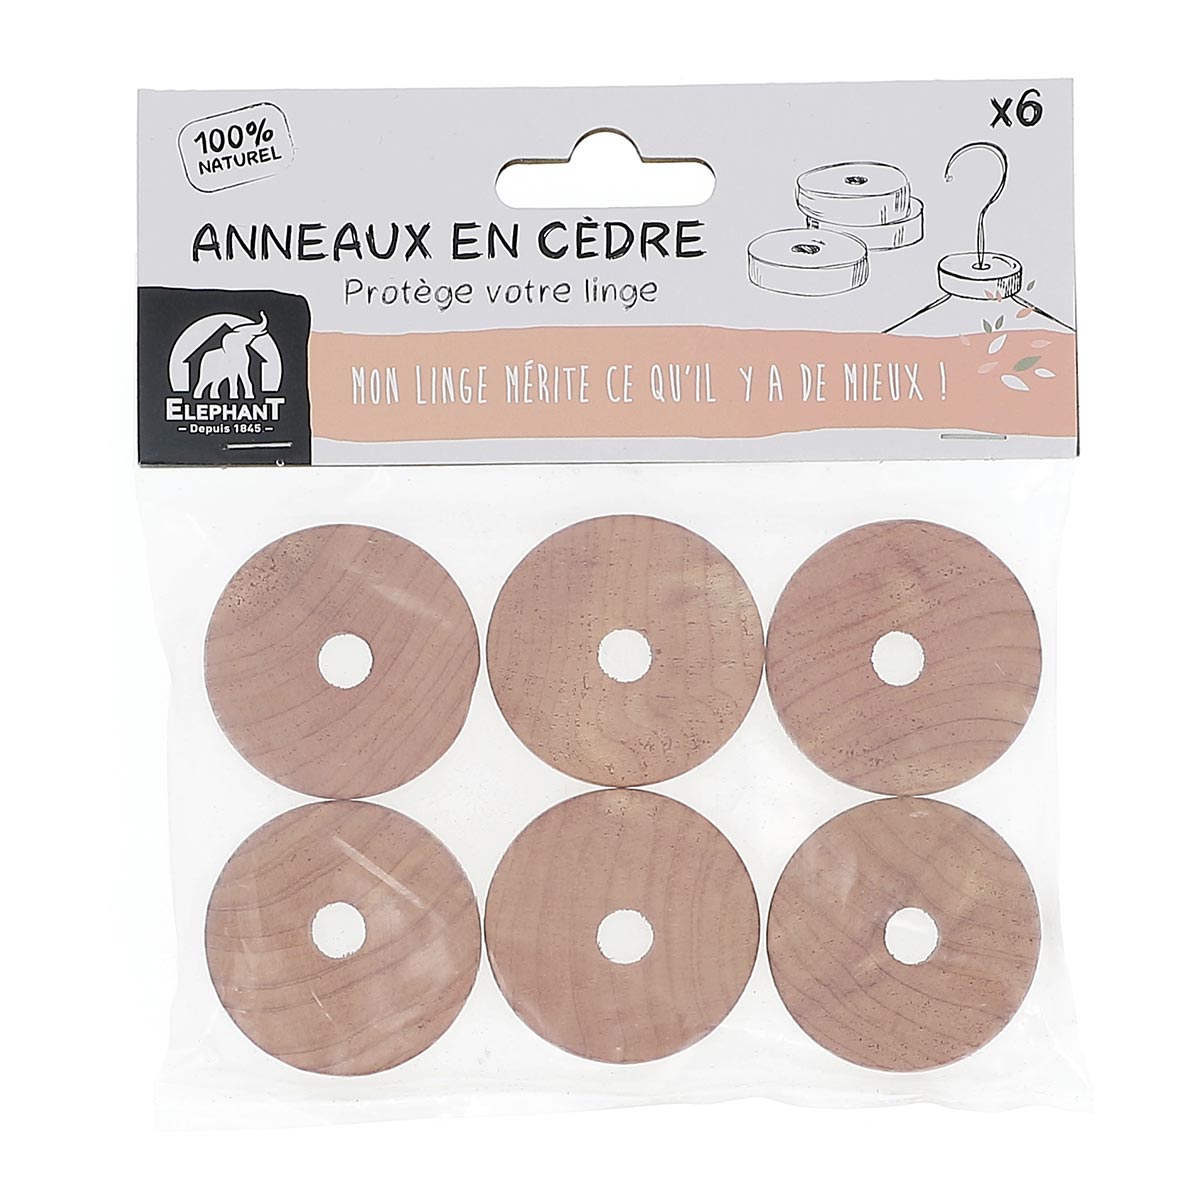 Accessoires parfumés - Anneaux en cèdre x6 - Elephant Maison